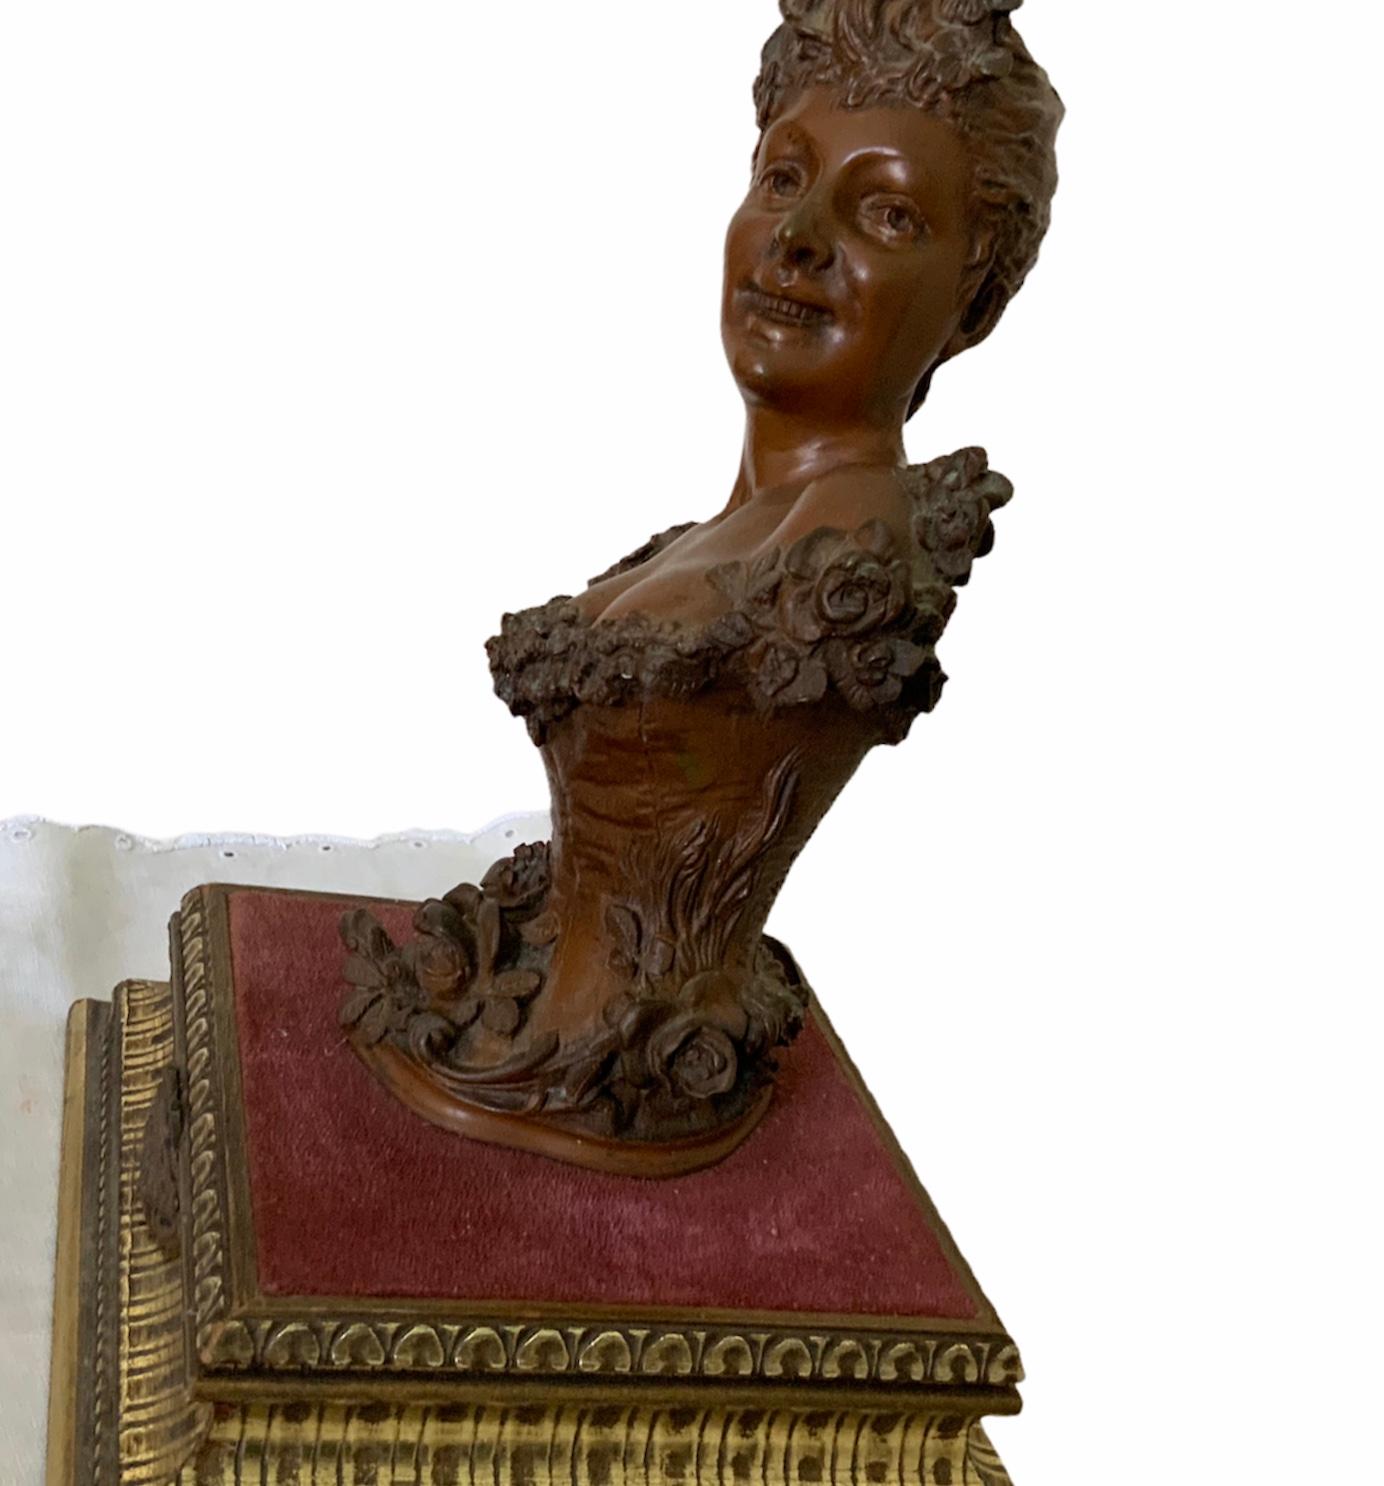 Il s'agit d'un buste de femme en bronze de Maurice Maignan. Il représente une jeune femme souriante portant un corset serré orné d'une bordure supérieure pleine de volants. Elle a aussi une sorte de guirlande de roses qui part de son épaule gauche